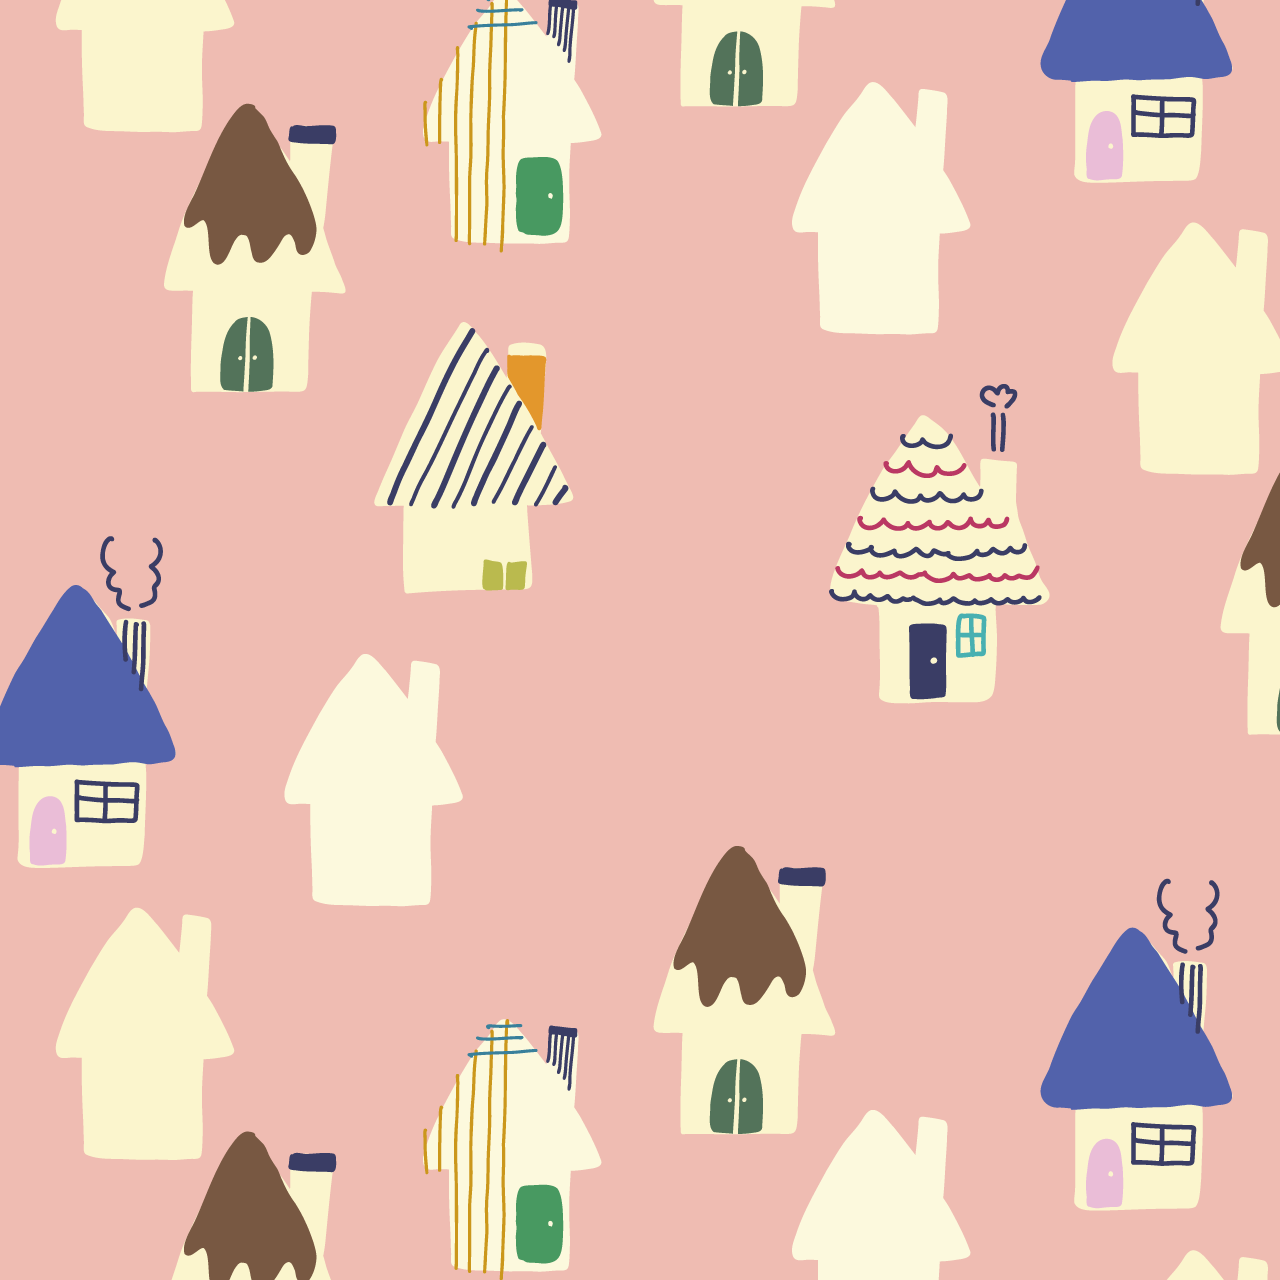 サーモンピンクの背景に色々な模様の家々のパターン